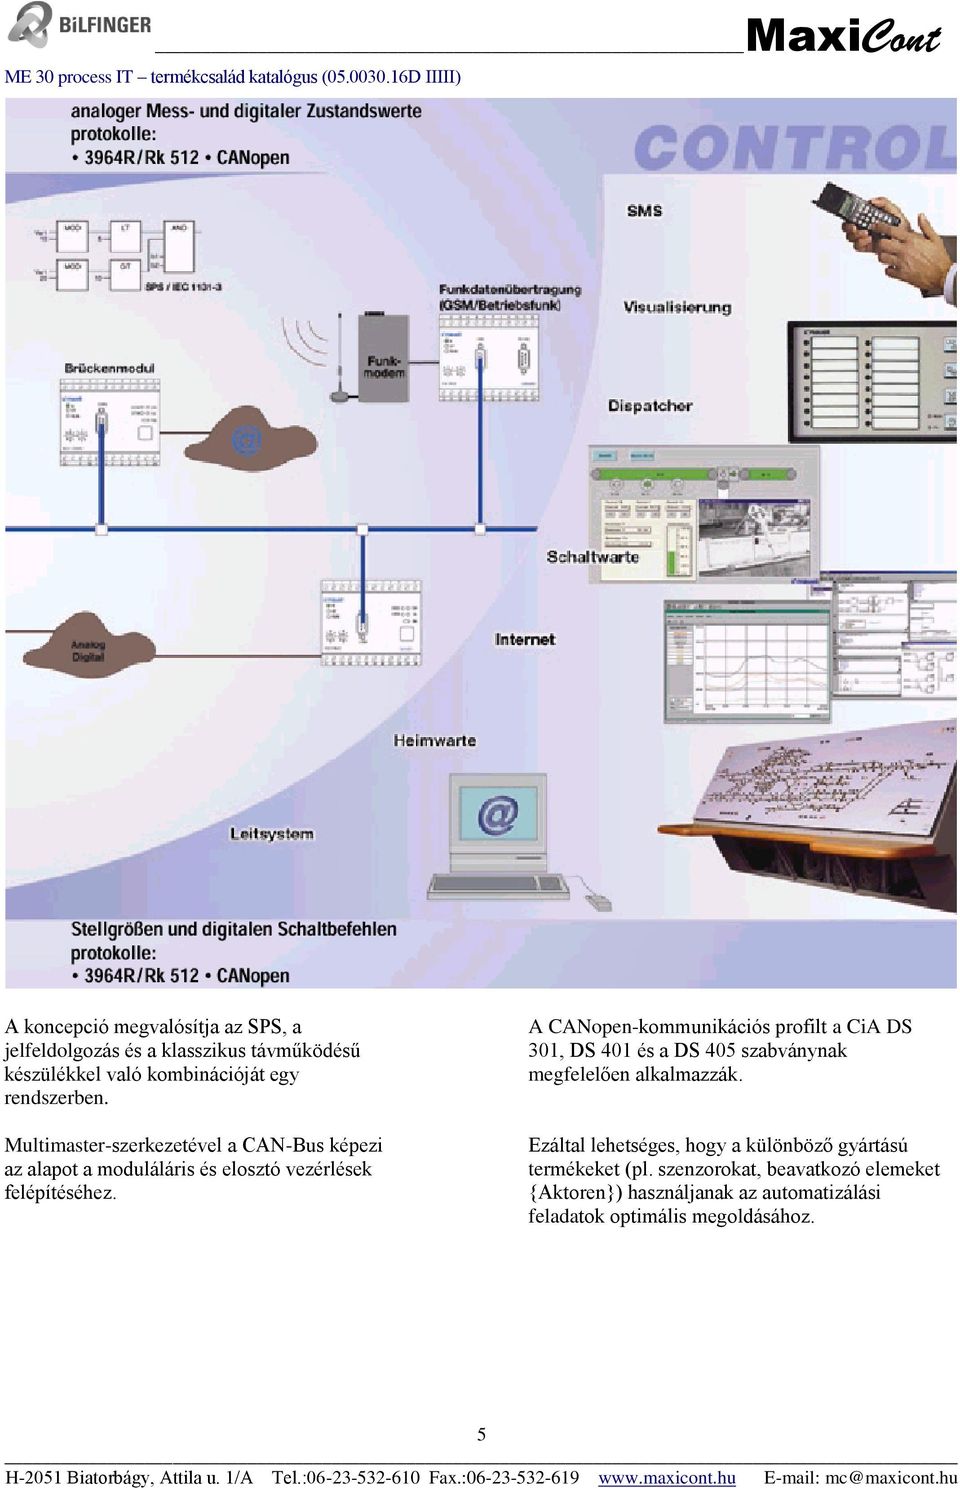 A CANopen-kommunikációs profilt a CiA DS 301, DS 401 és a DS 405 szabványnak megfelelően alkalmazzák.